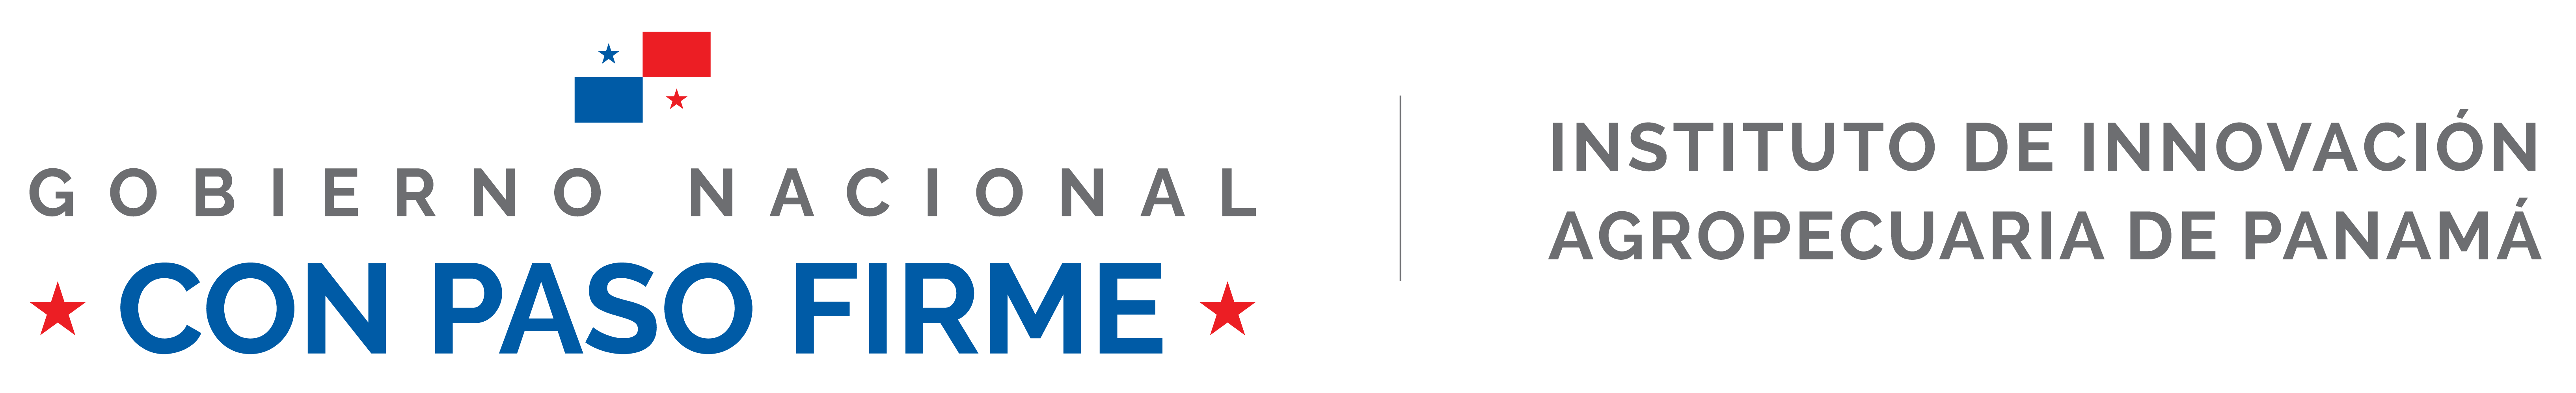 logo_gobierno_nacional